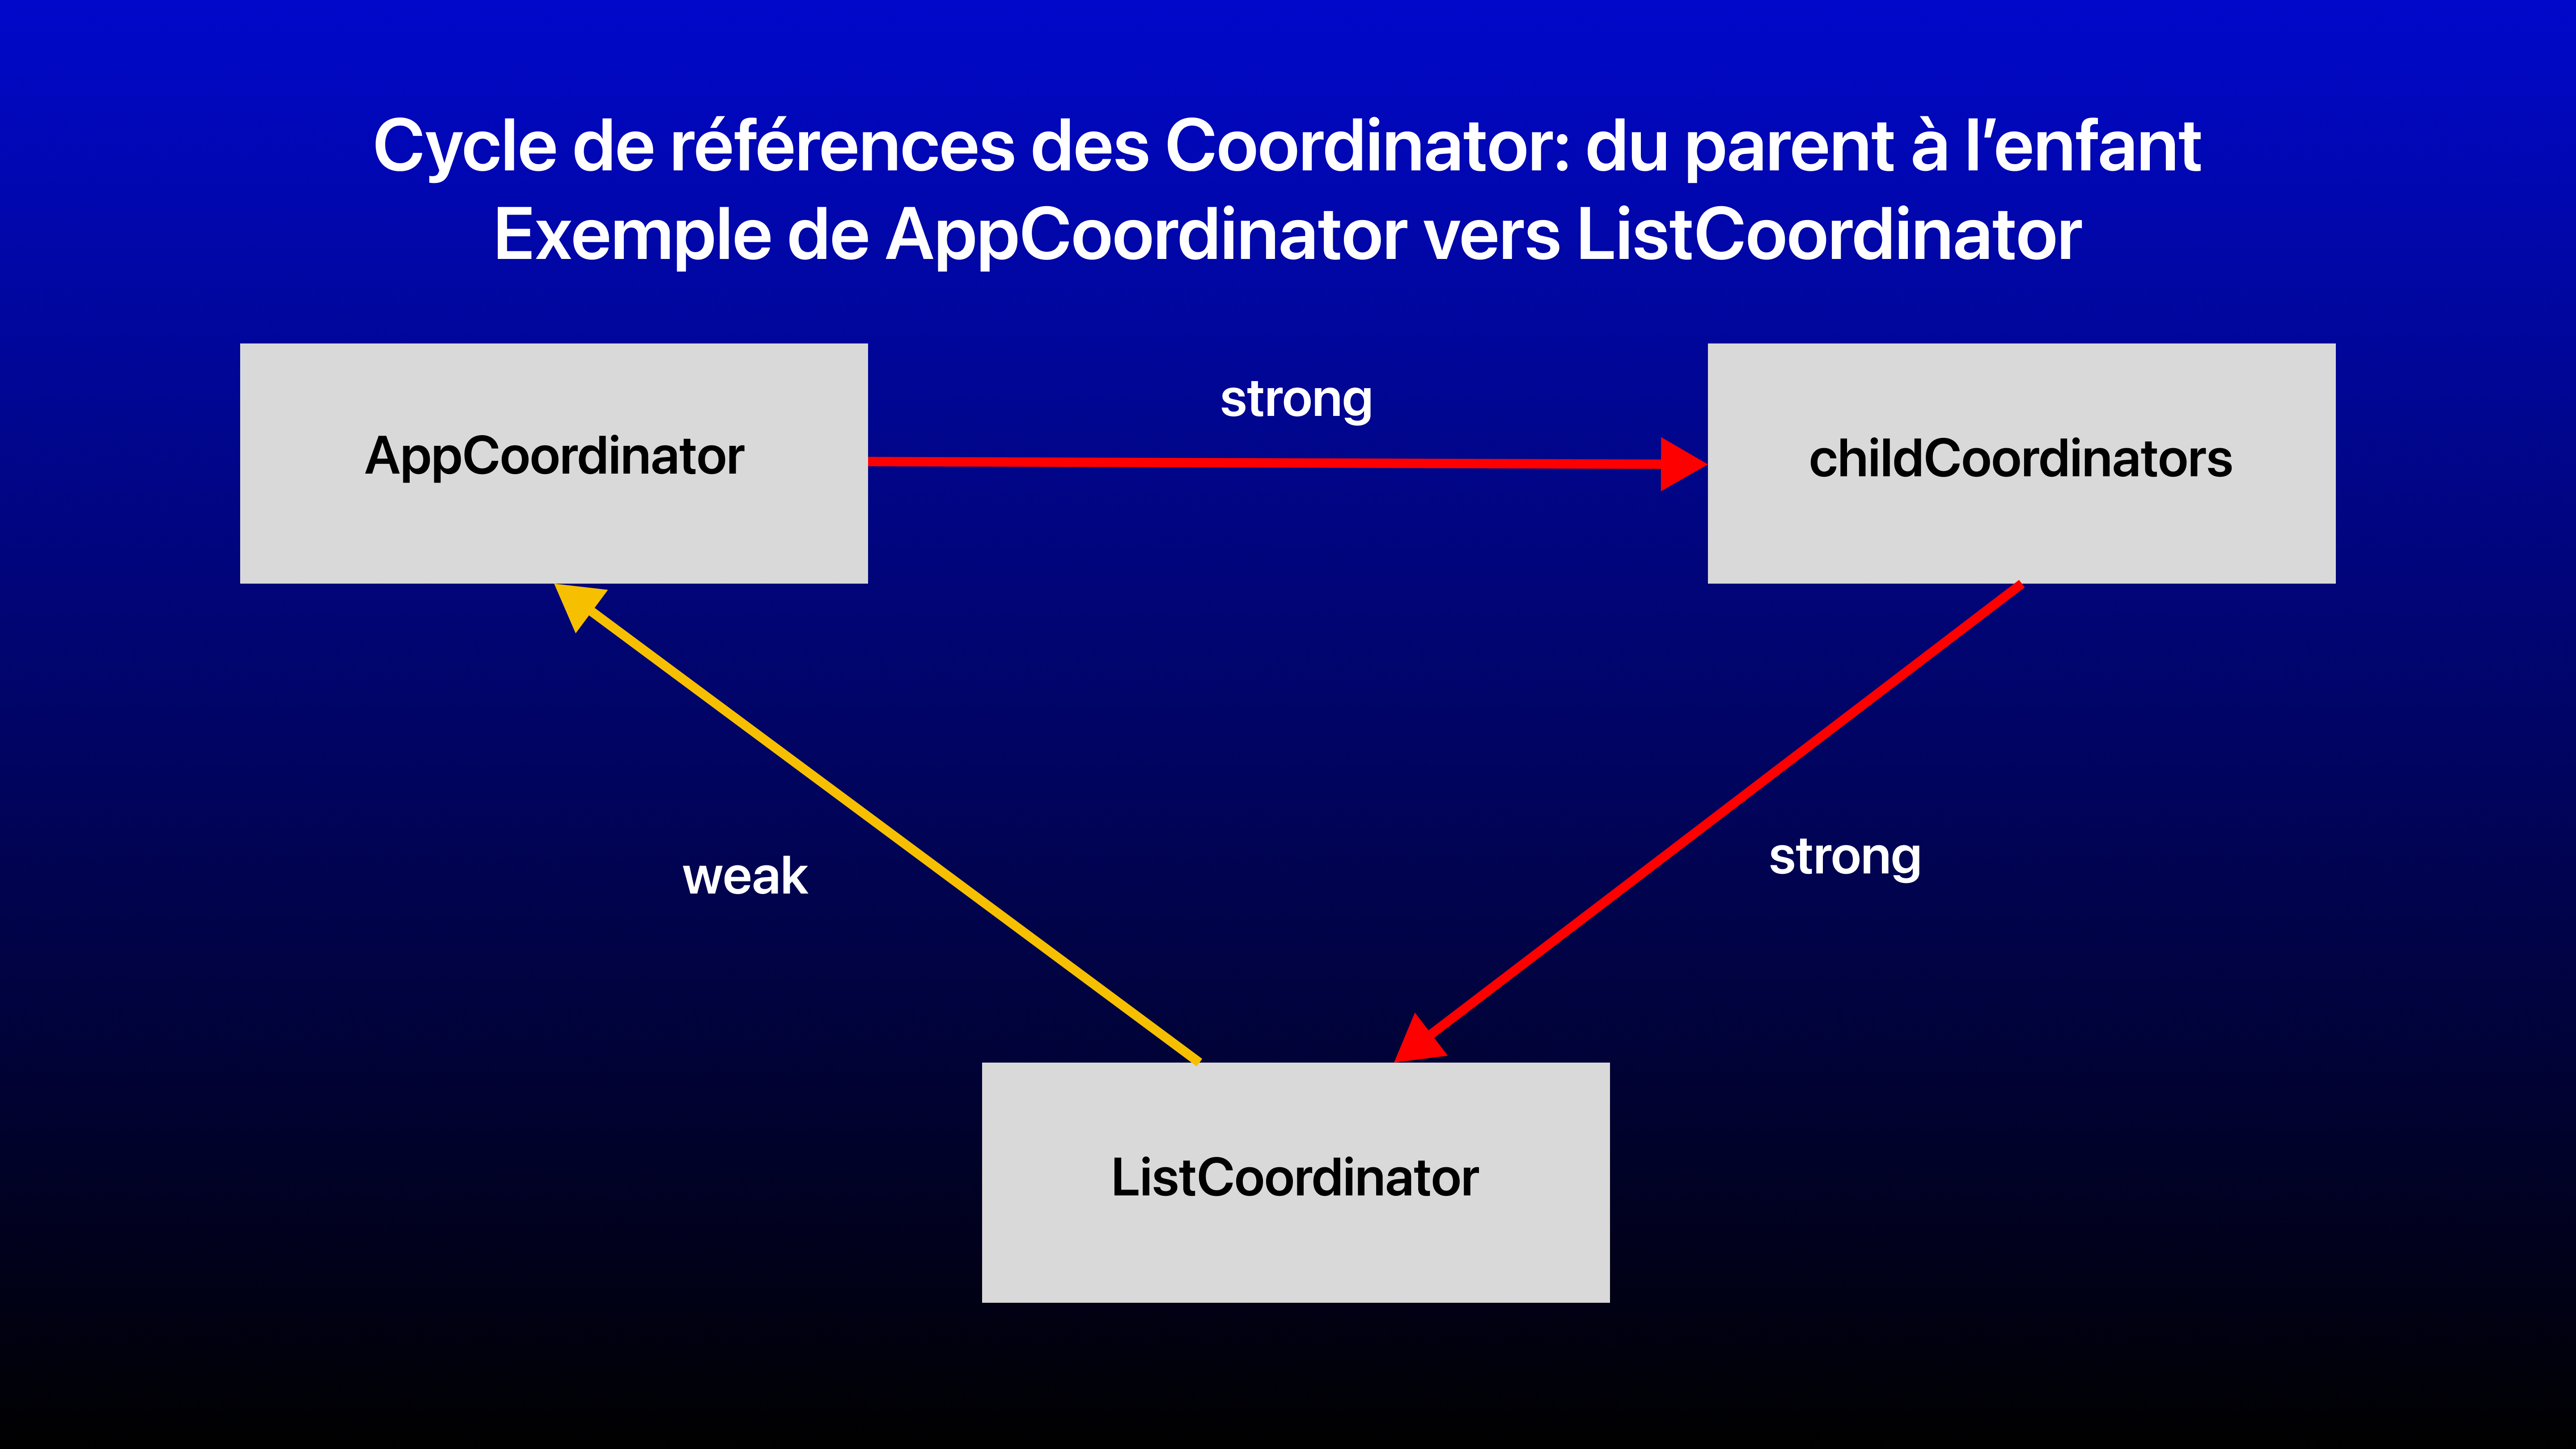 Cycle de références Coordinators